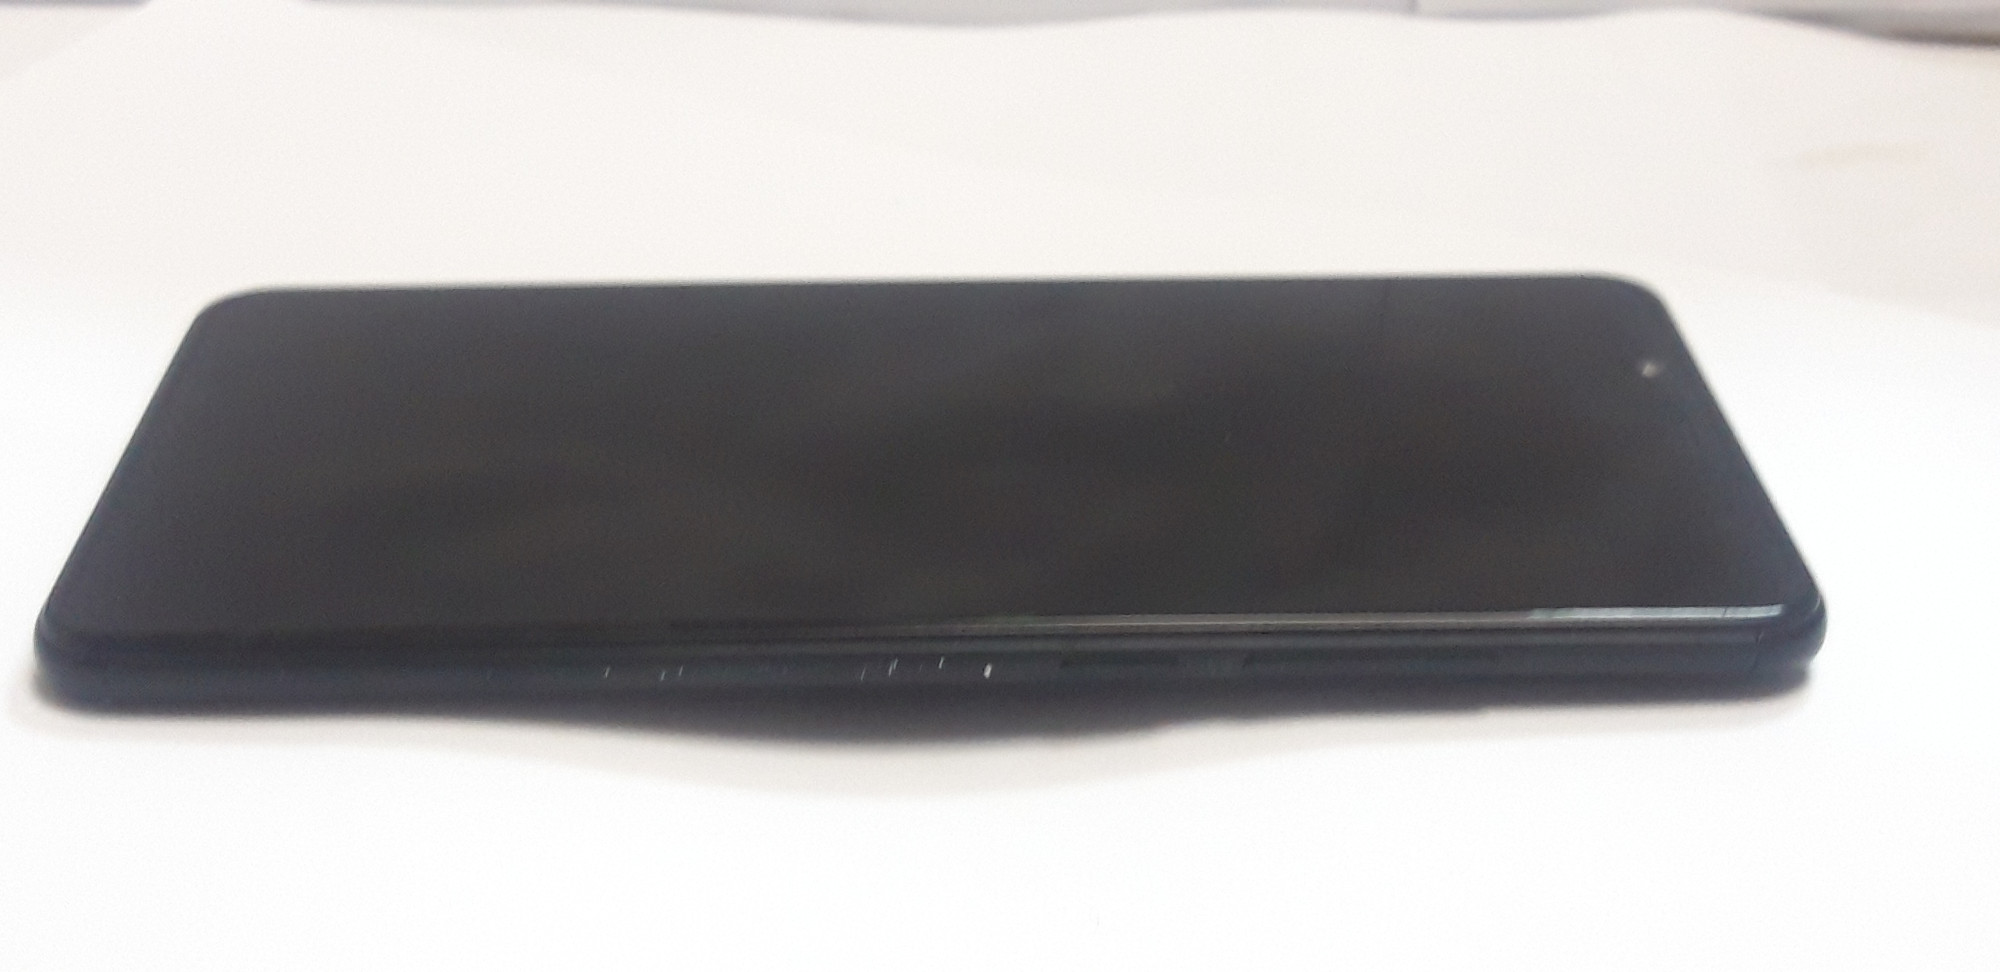 Xiaomi Redmi Note 5 3/32GB Black 4